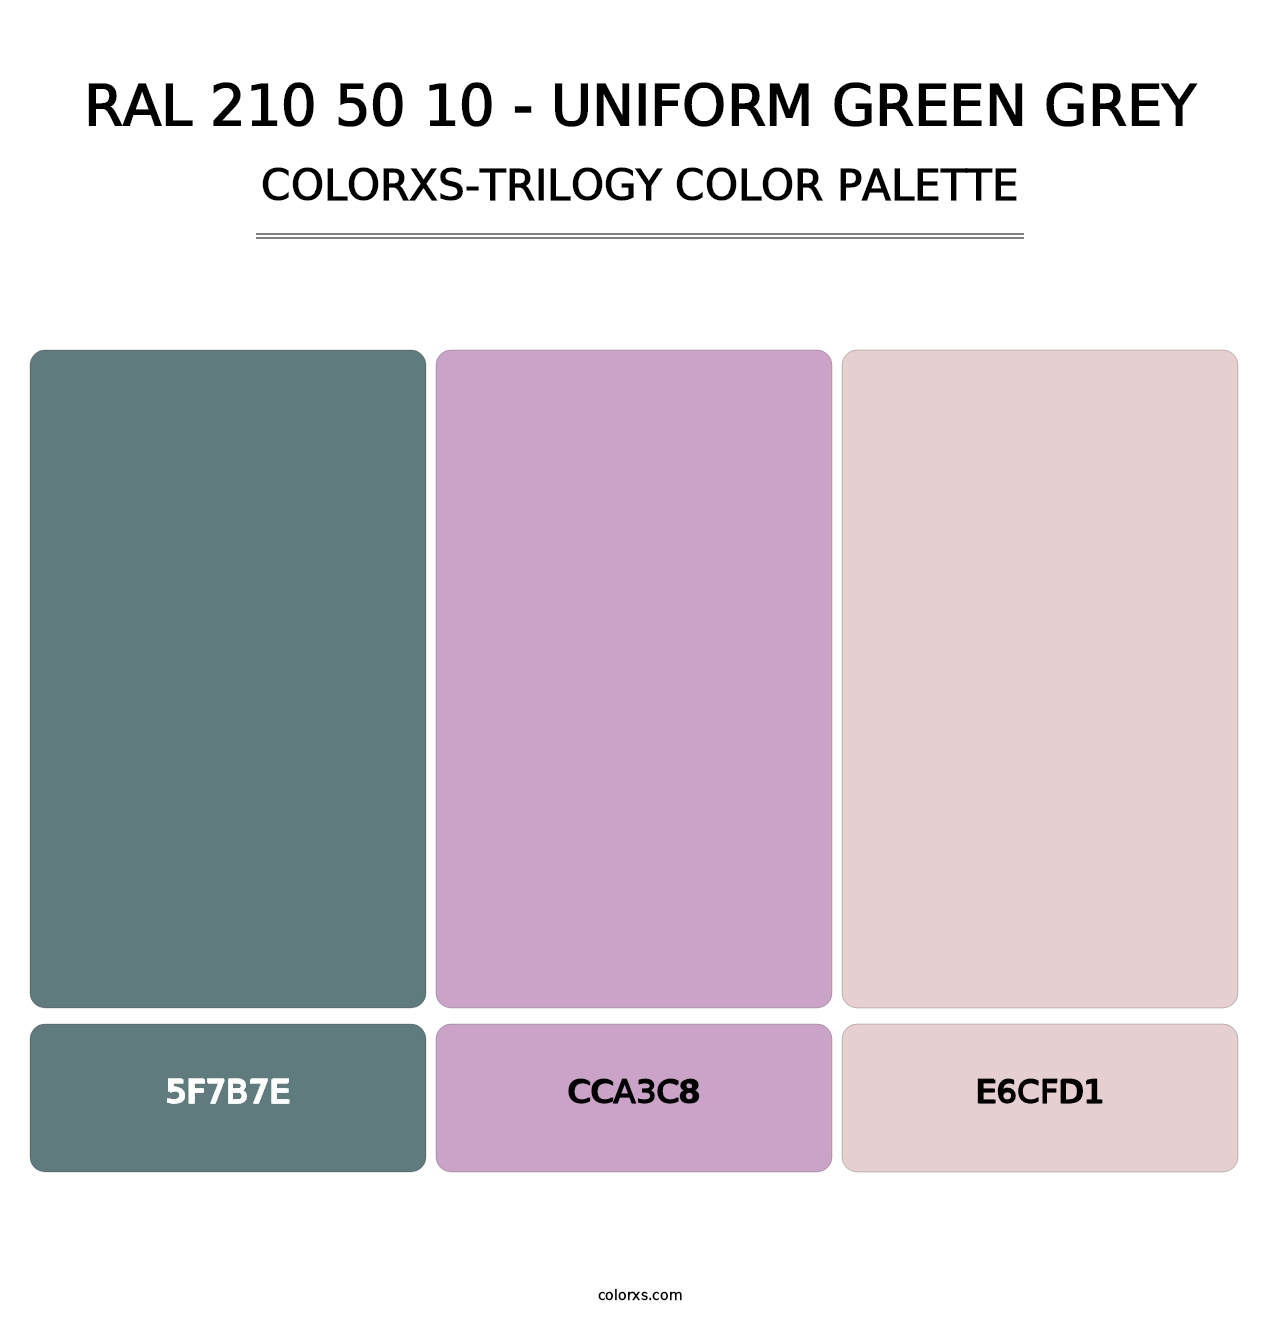 RAL 210 50 10 - Uniform Green Grey - Colorxs Trilogy Palette